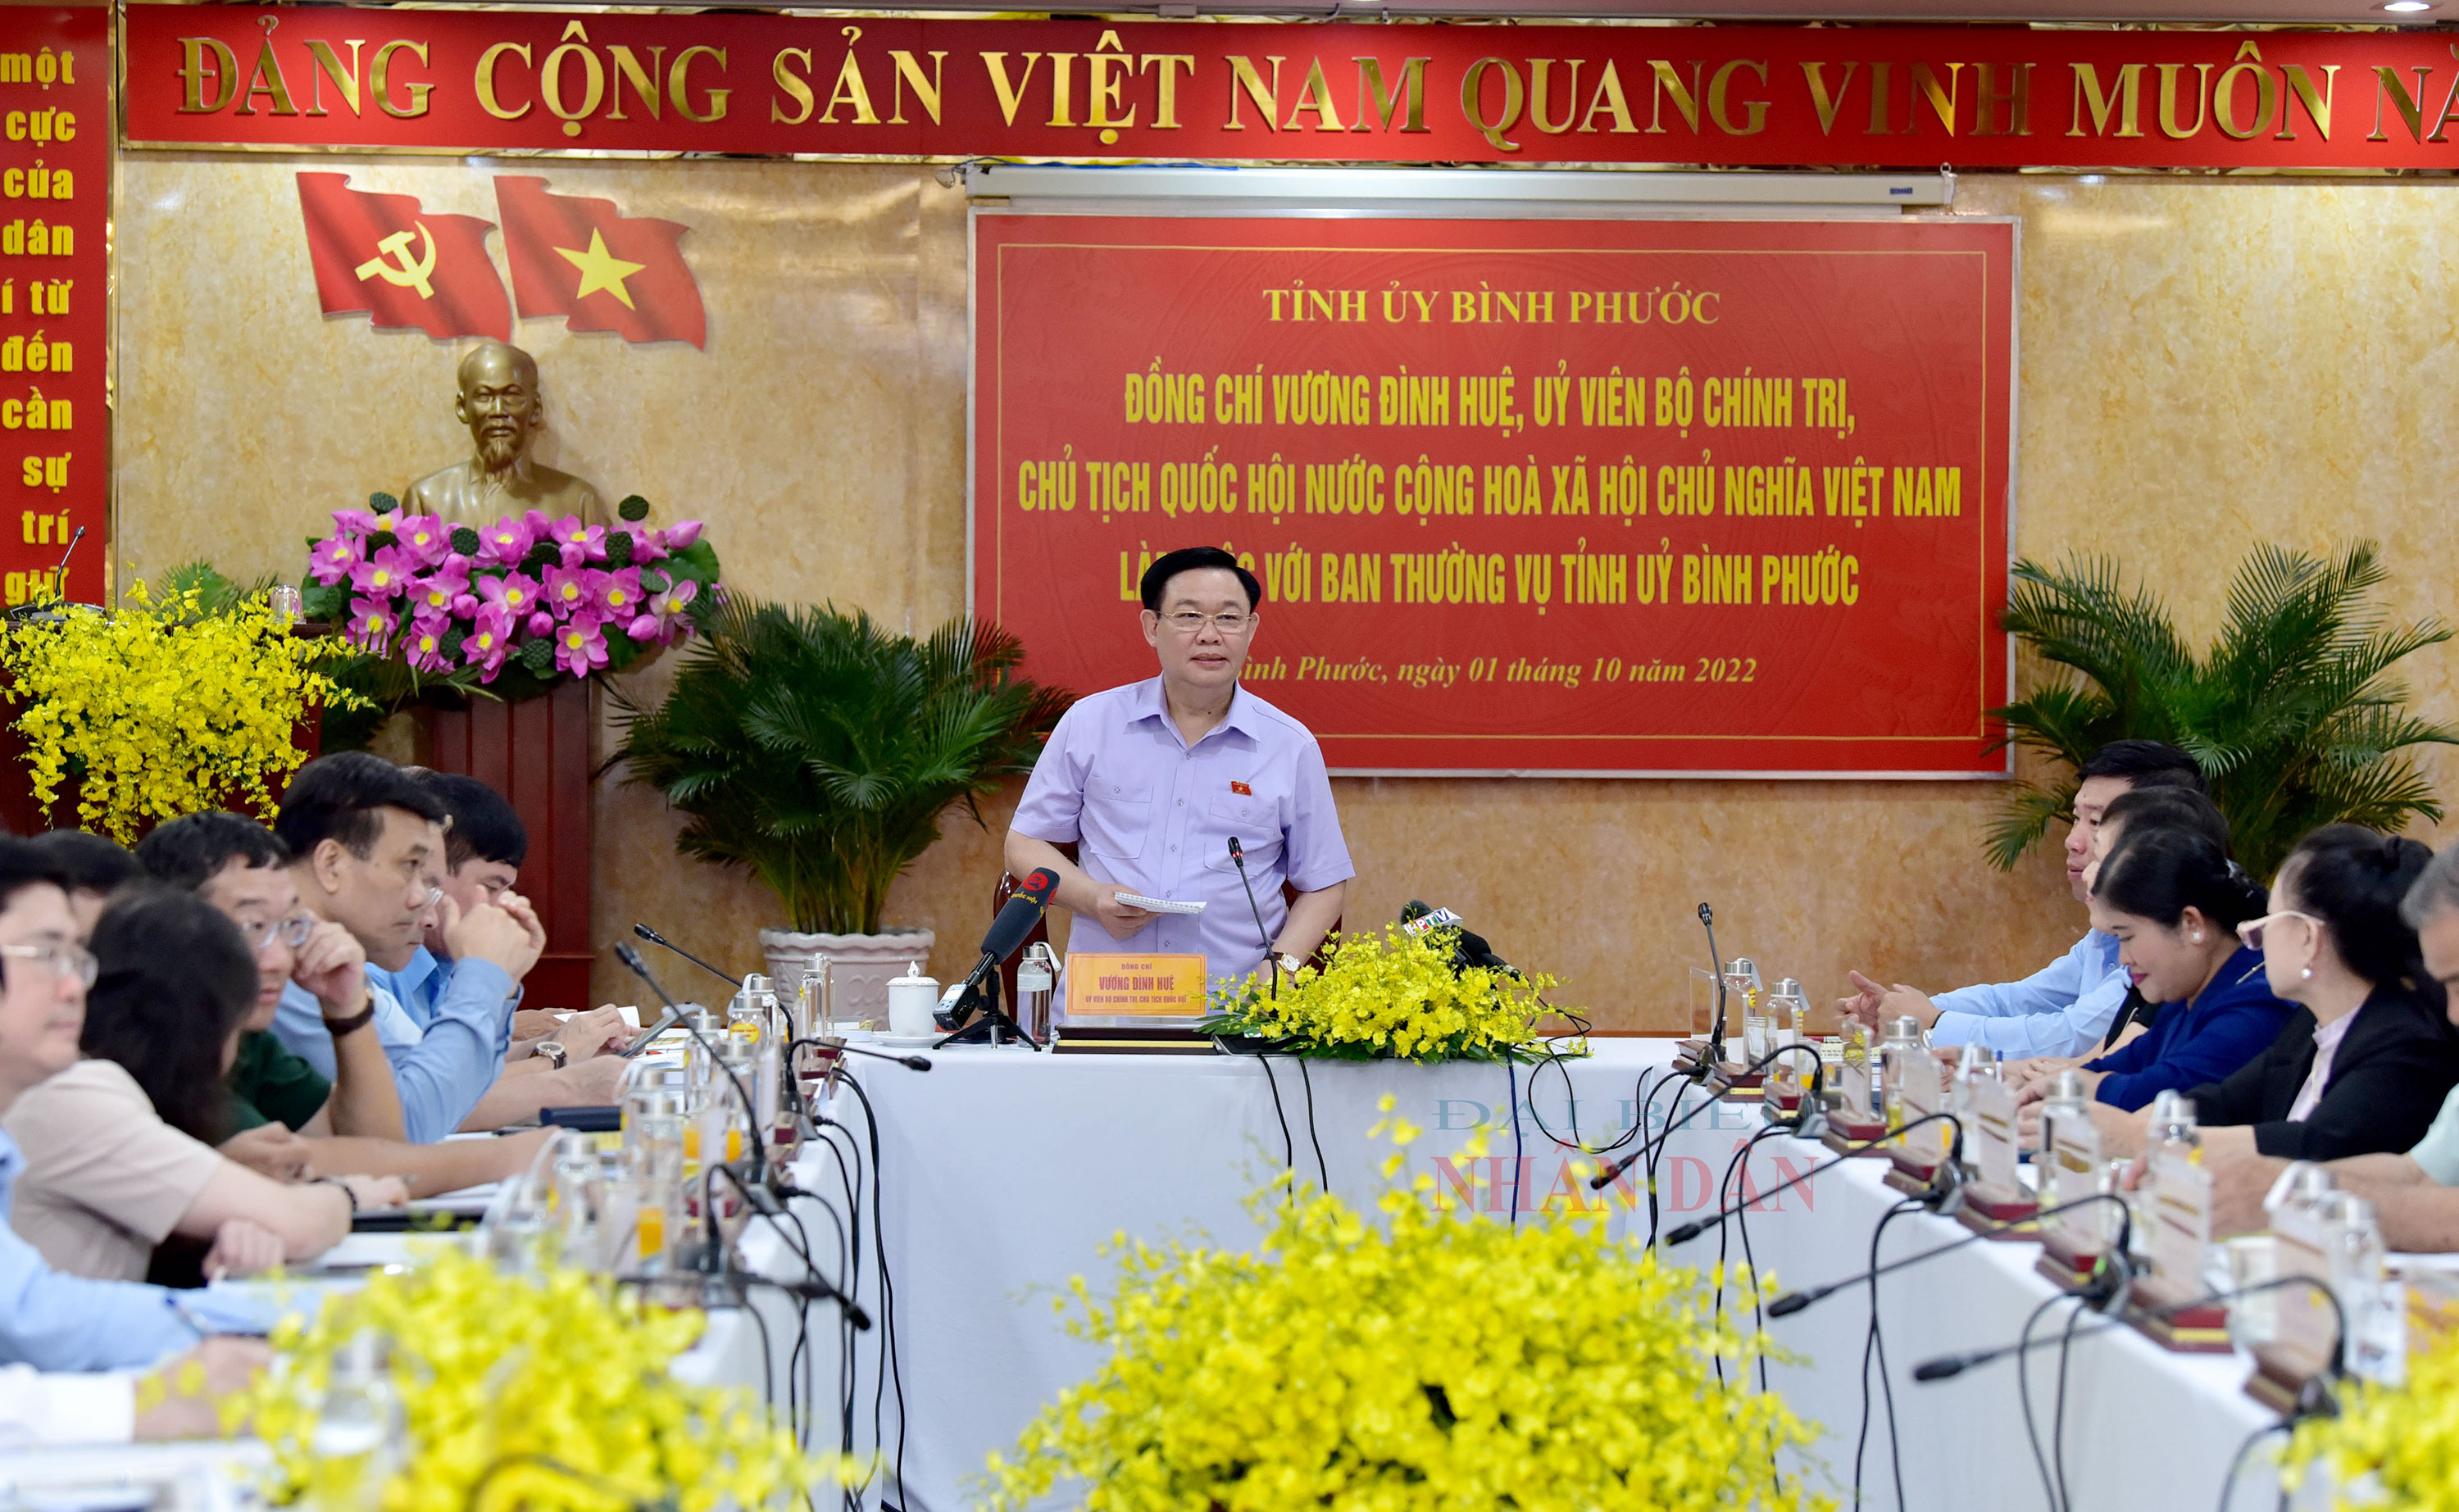 Chủ tịch Quốc hội Vương Đình Huệ làm việc với Bình Phước: Lưu ý số lượng doanh nghiệp, hợp tác xã của tỉnh đạt thấp